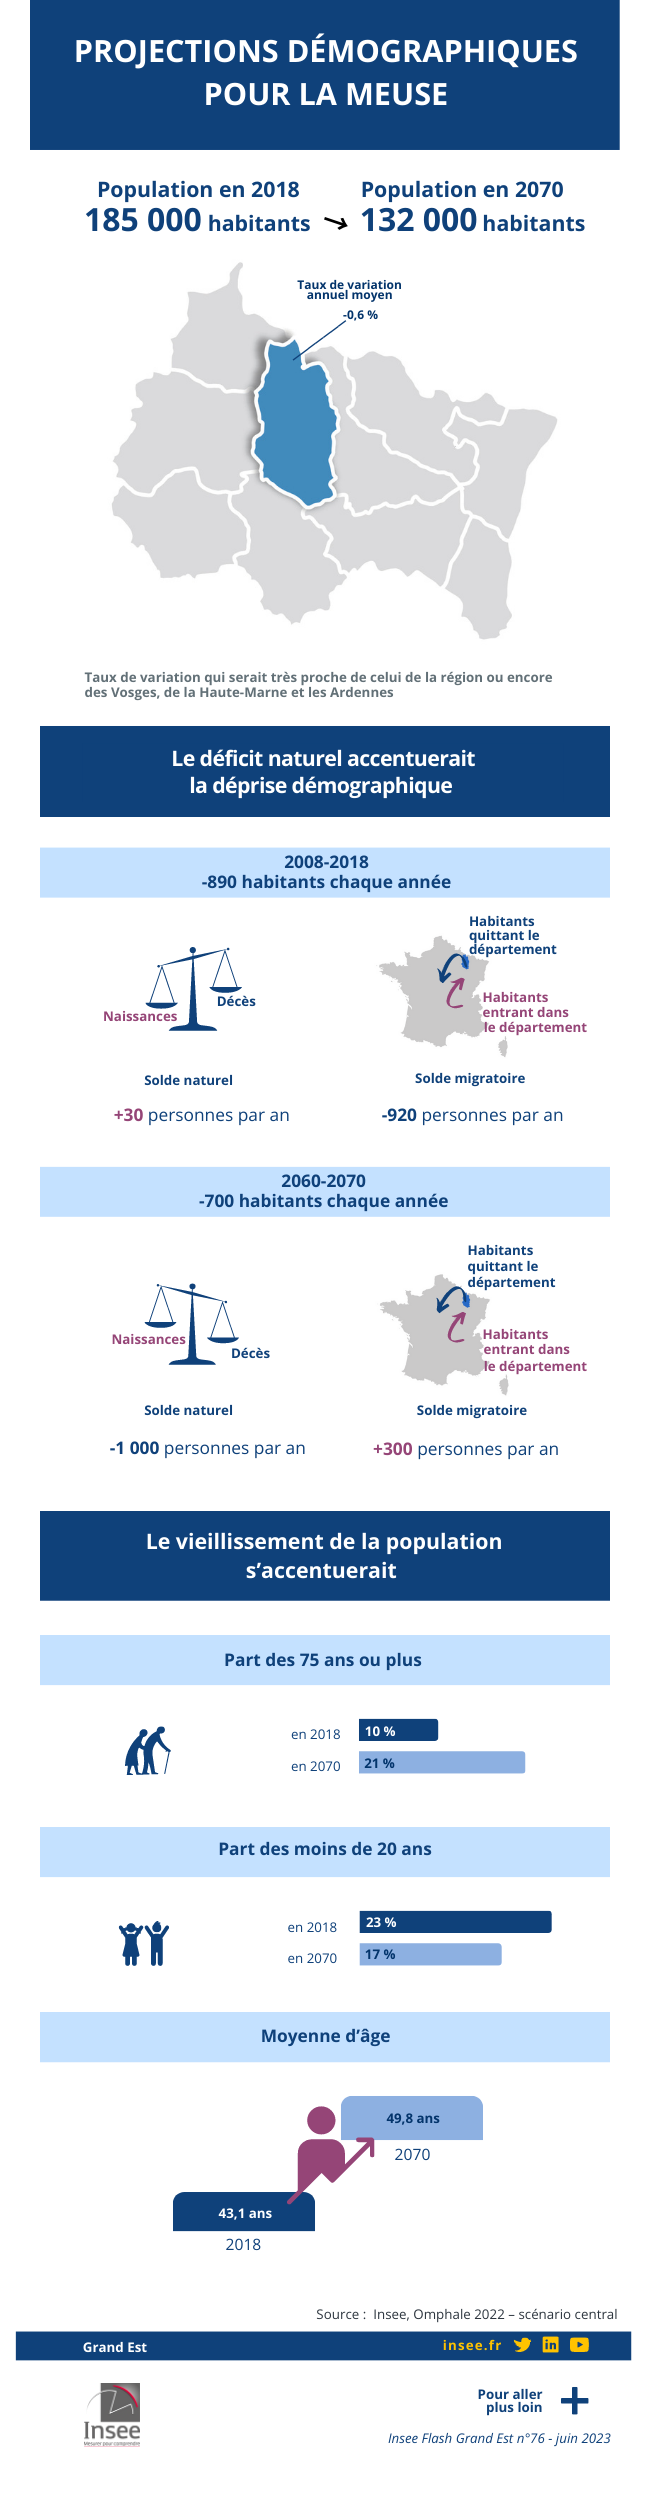 Infographie - Projections démographiques pour la Meuse